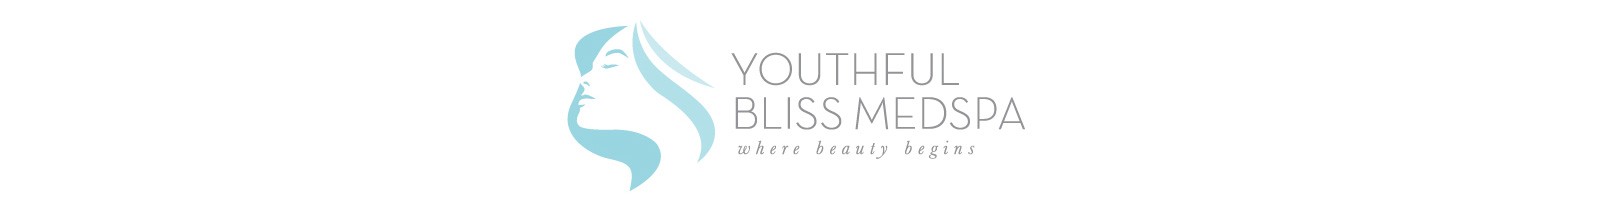 youthful bliss medspa logo